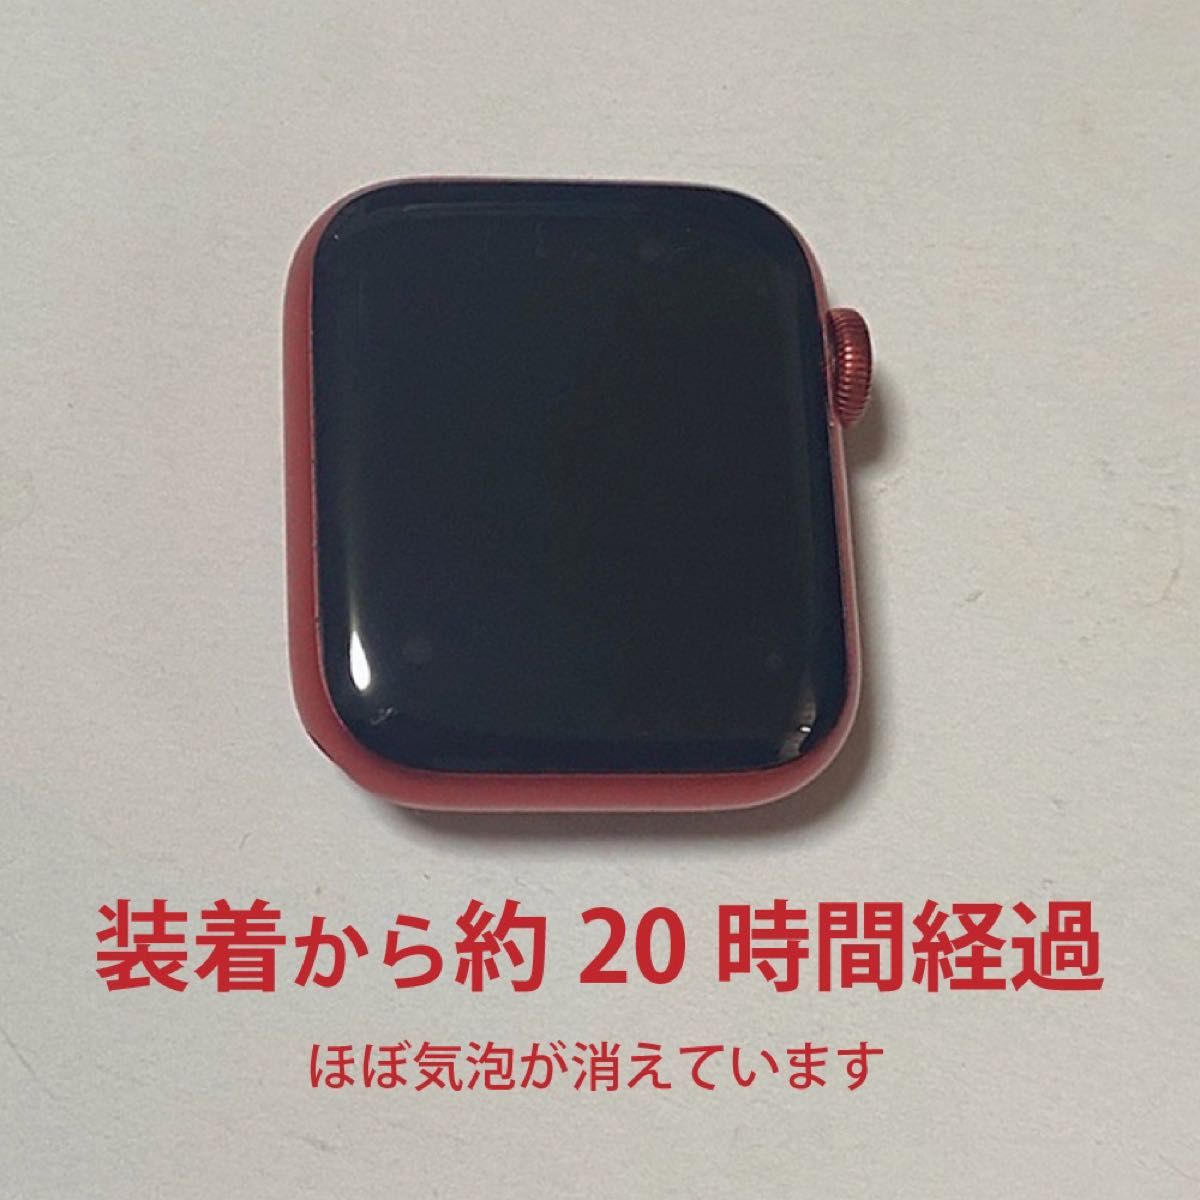 Apple Watchガラスフィルム(保護フィルム)×2【40mm】